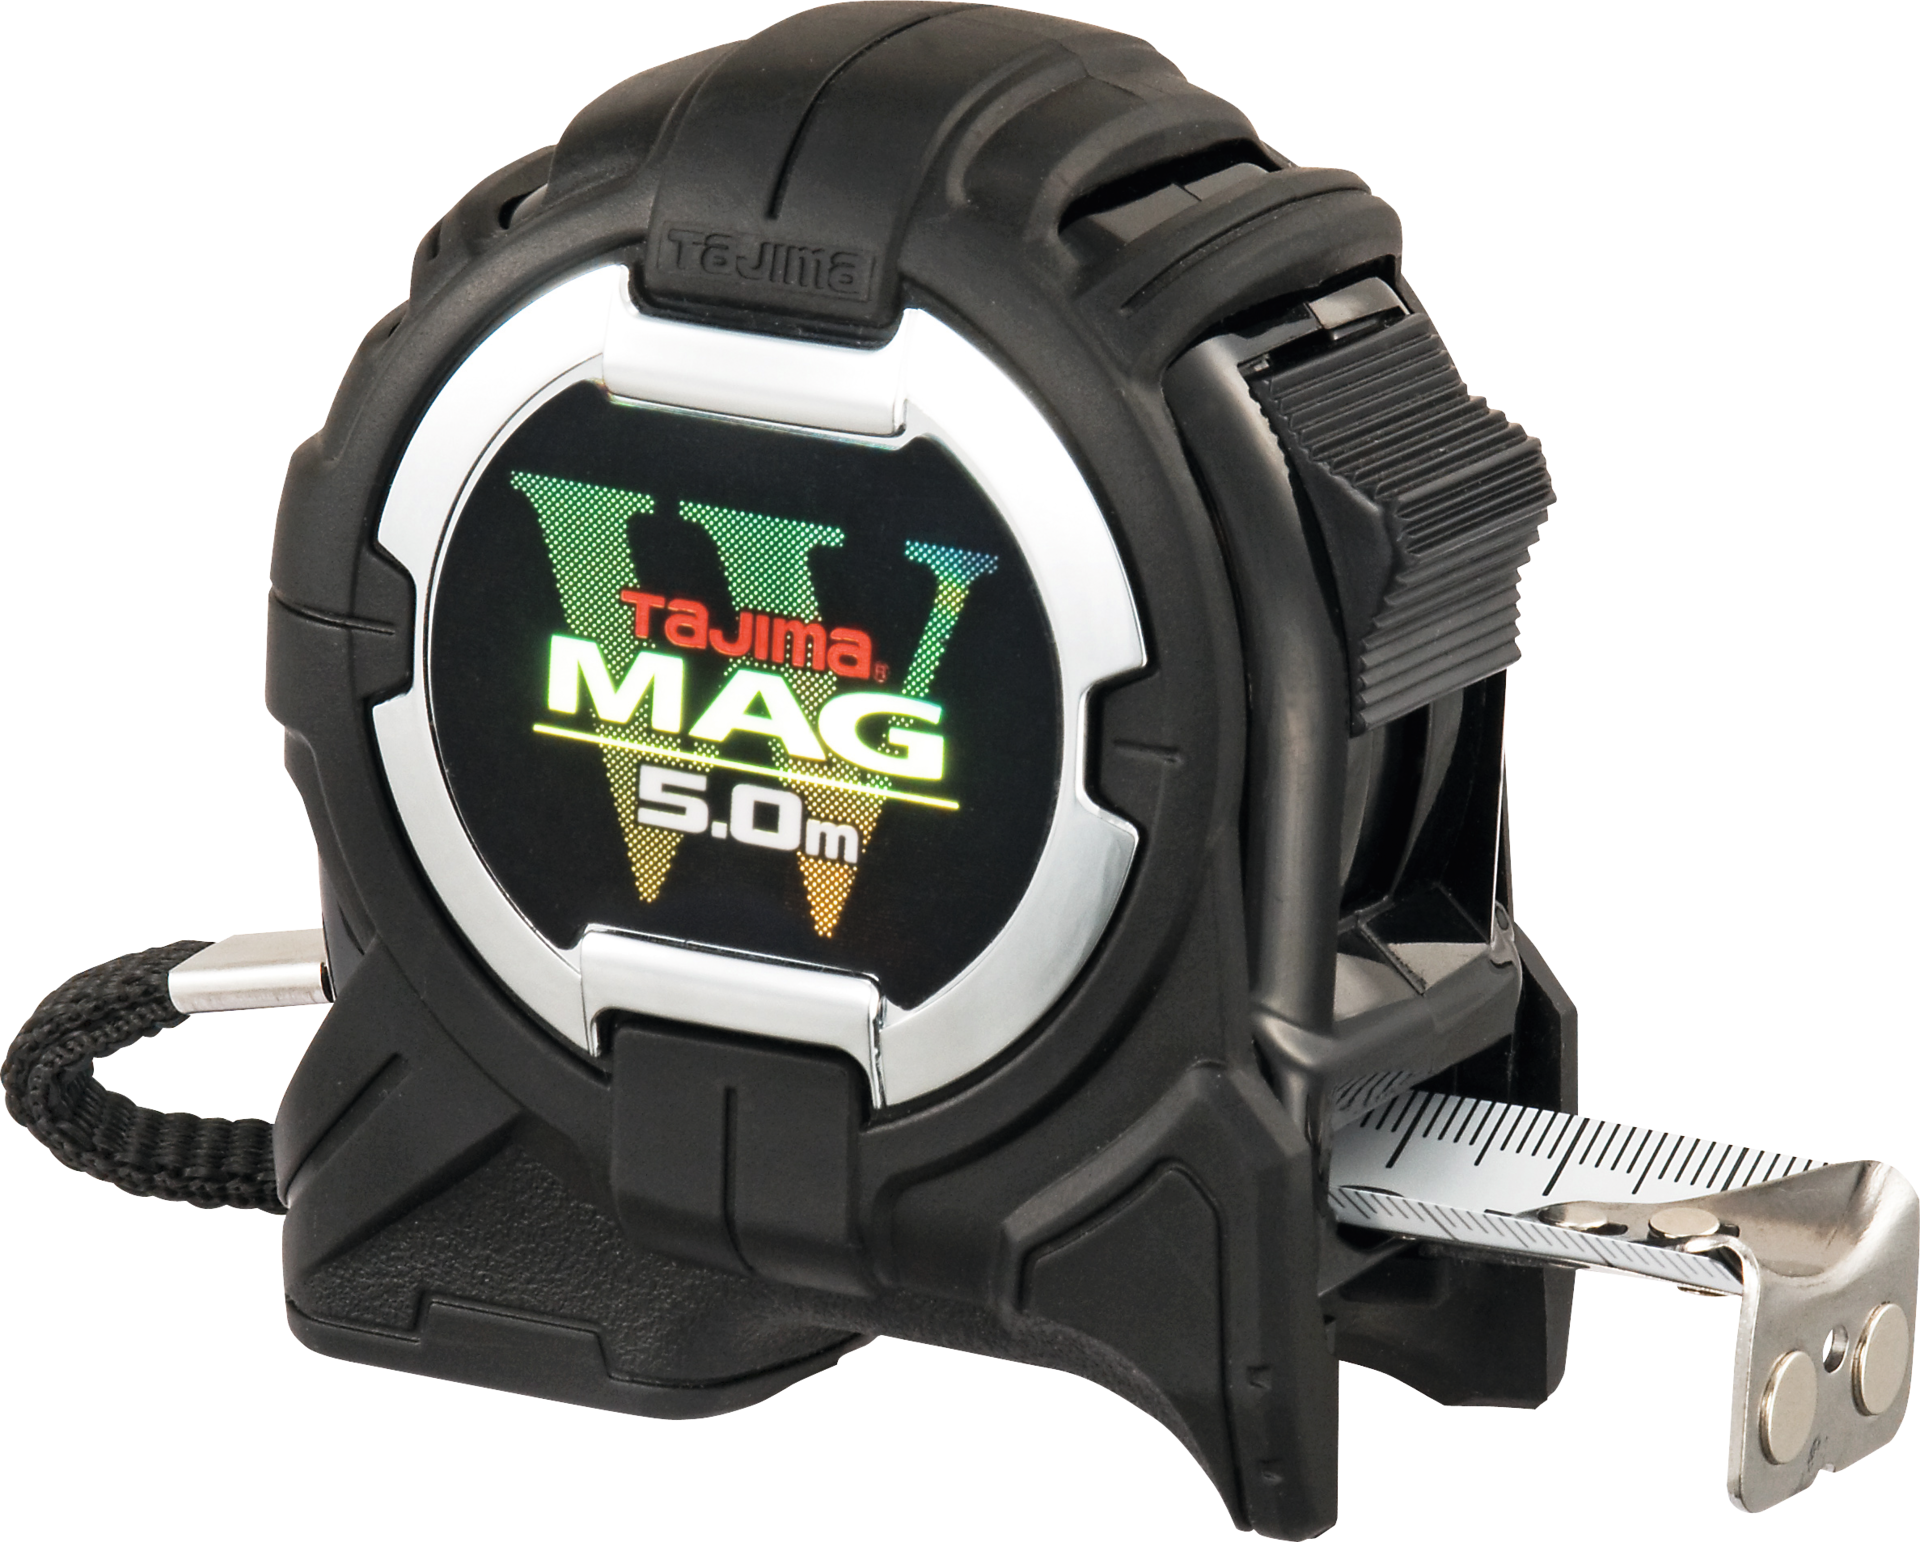 Taschenbandmaß mit magnetischem Endhaken und Sohle W-MAG W-MAG Abl. 1mm EG II mit Magnetschiene & magn. Endhaken B25mm L5m